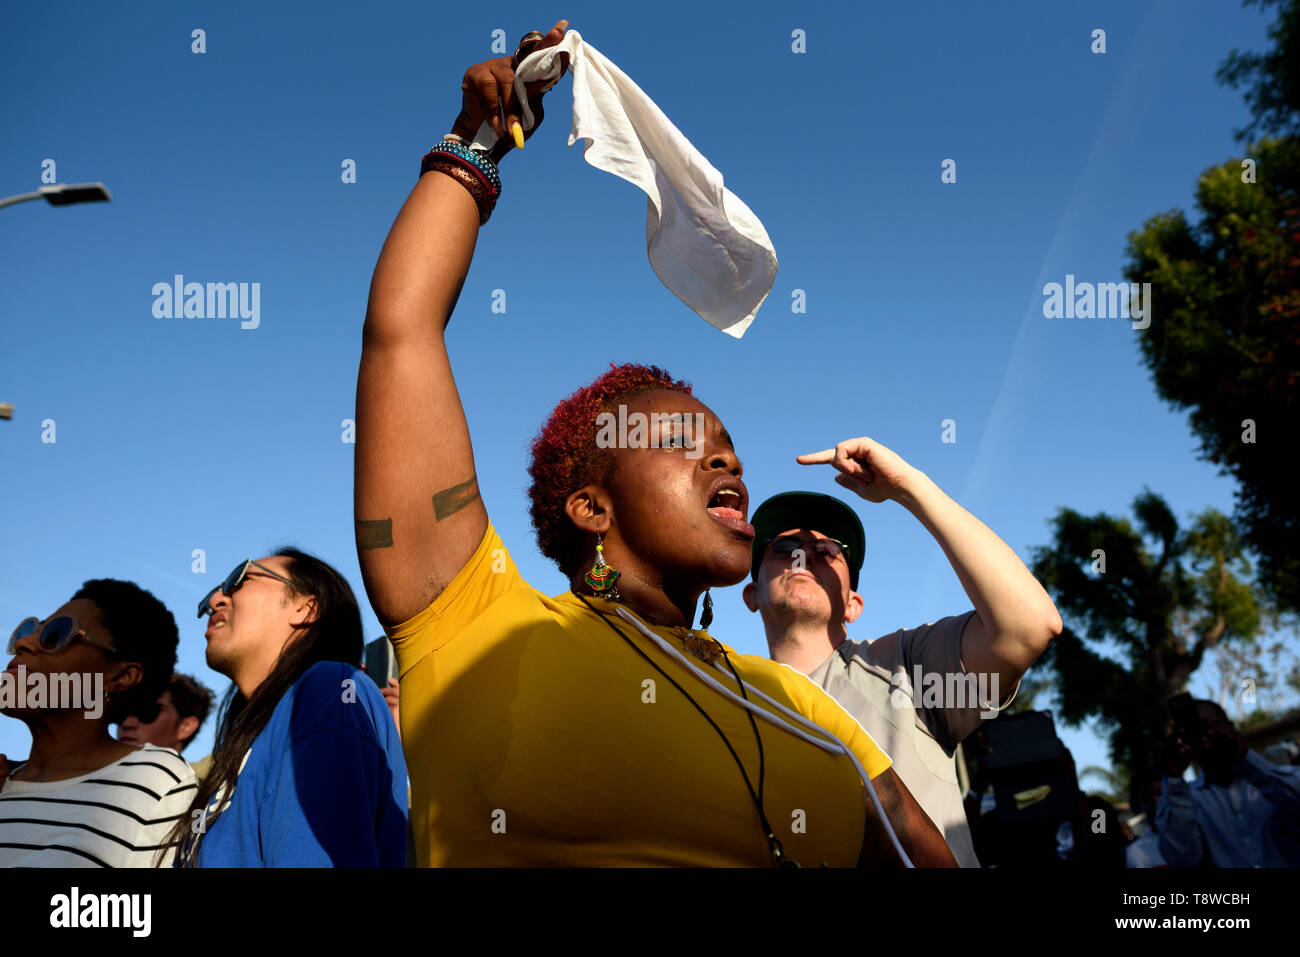 Une femme vu scandant des slogans guring le festival. Les gens se rassemblent dans le cadre d'un festival pour célébrer le changement de route de rodéo Boulevard Obama, en l'honneur de l'ancien président américain Barack Obama à Los Angeles, Californie. Banque D'Images